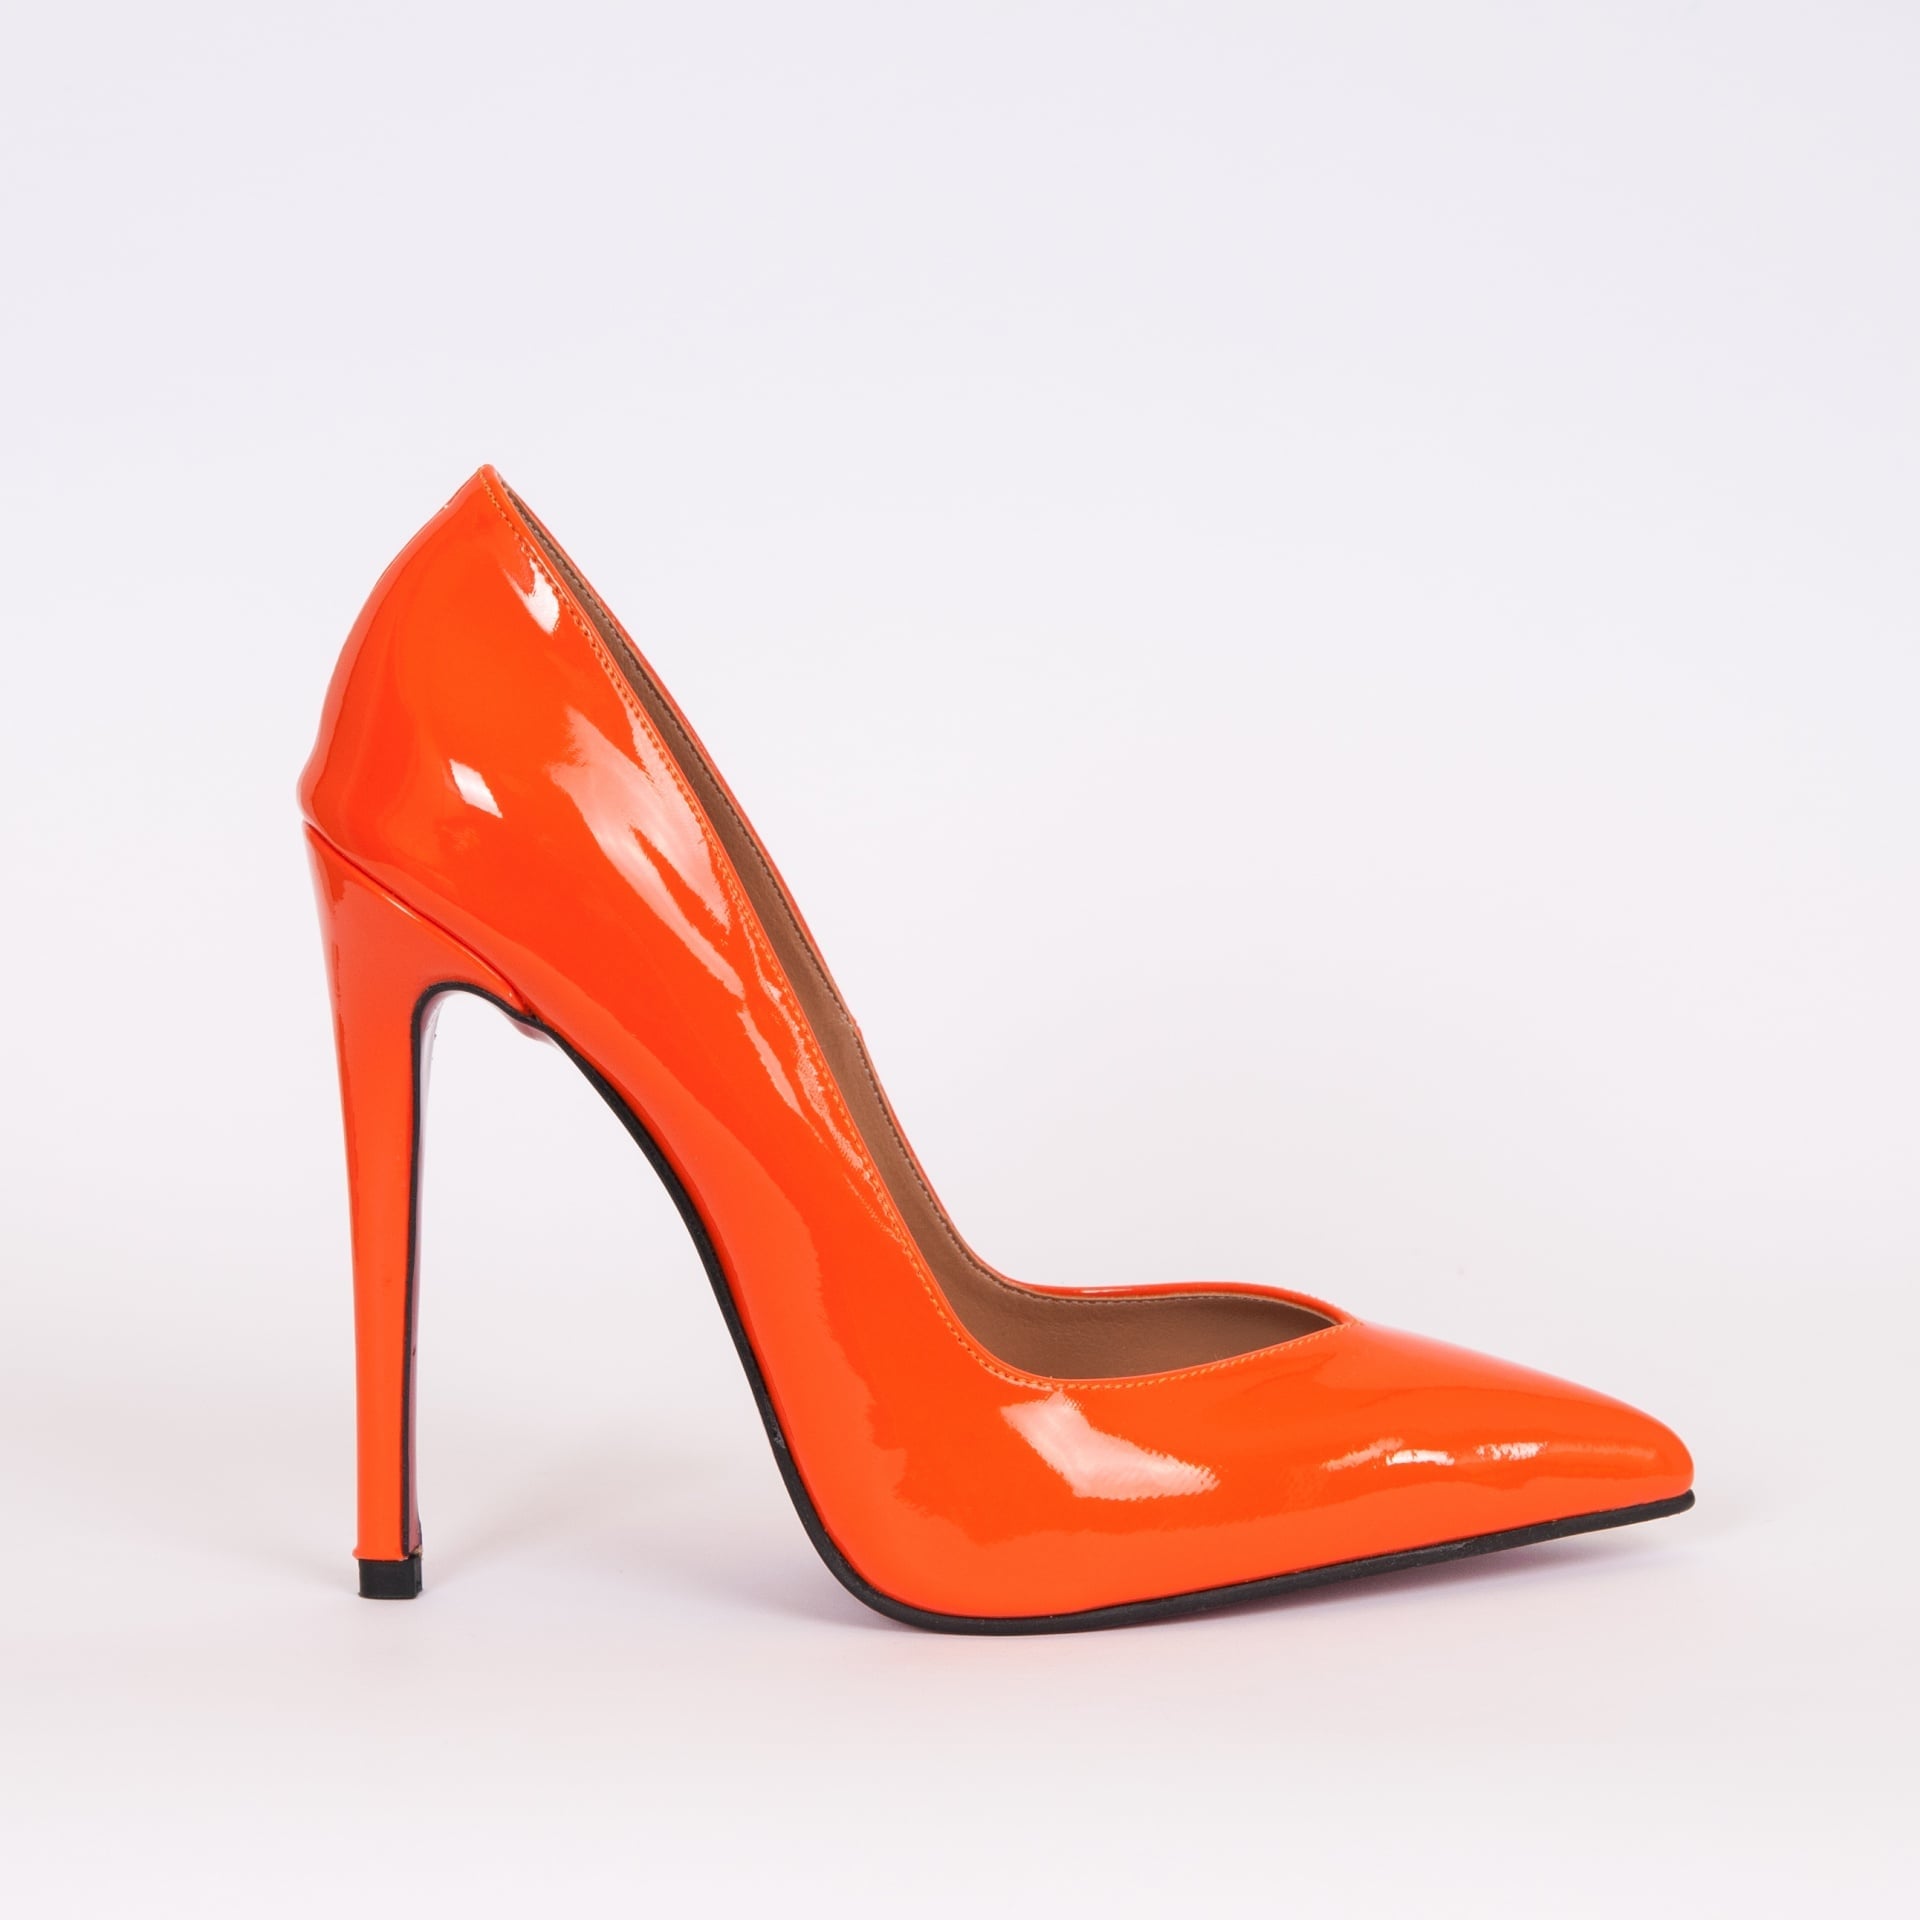 Дамски обувки VERONA оренжево лак  с ток 12 см.